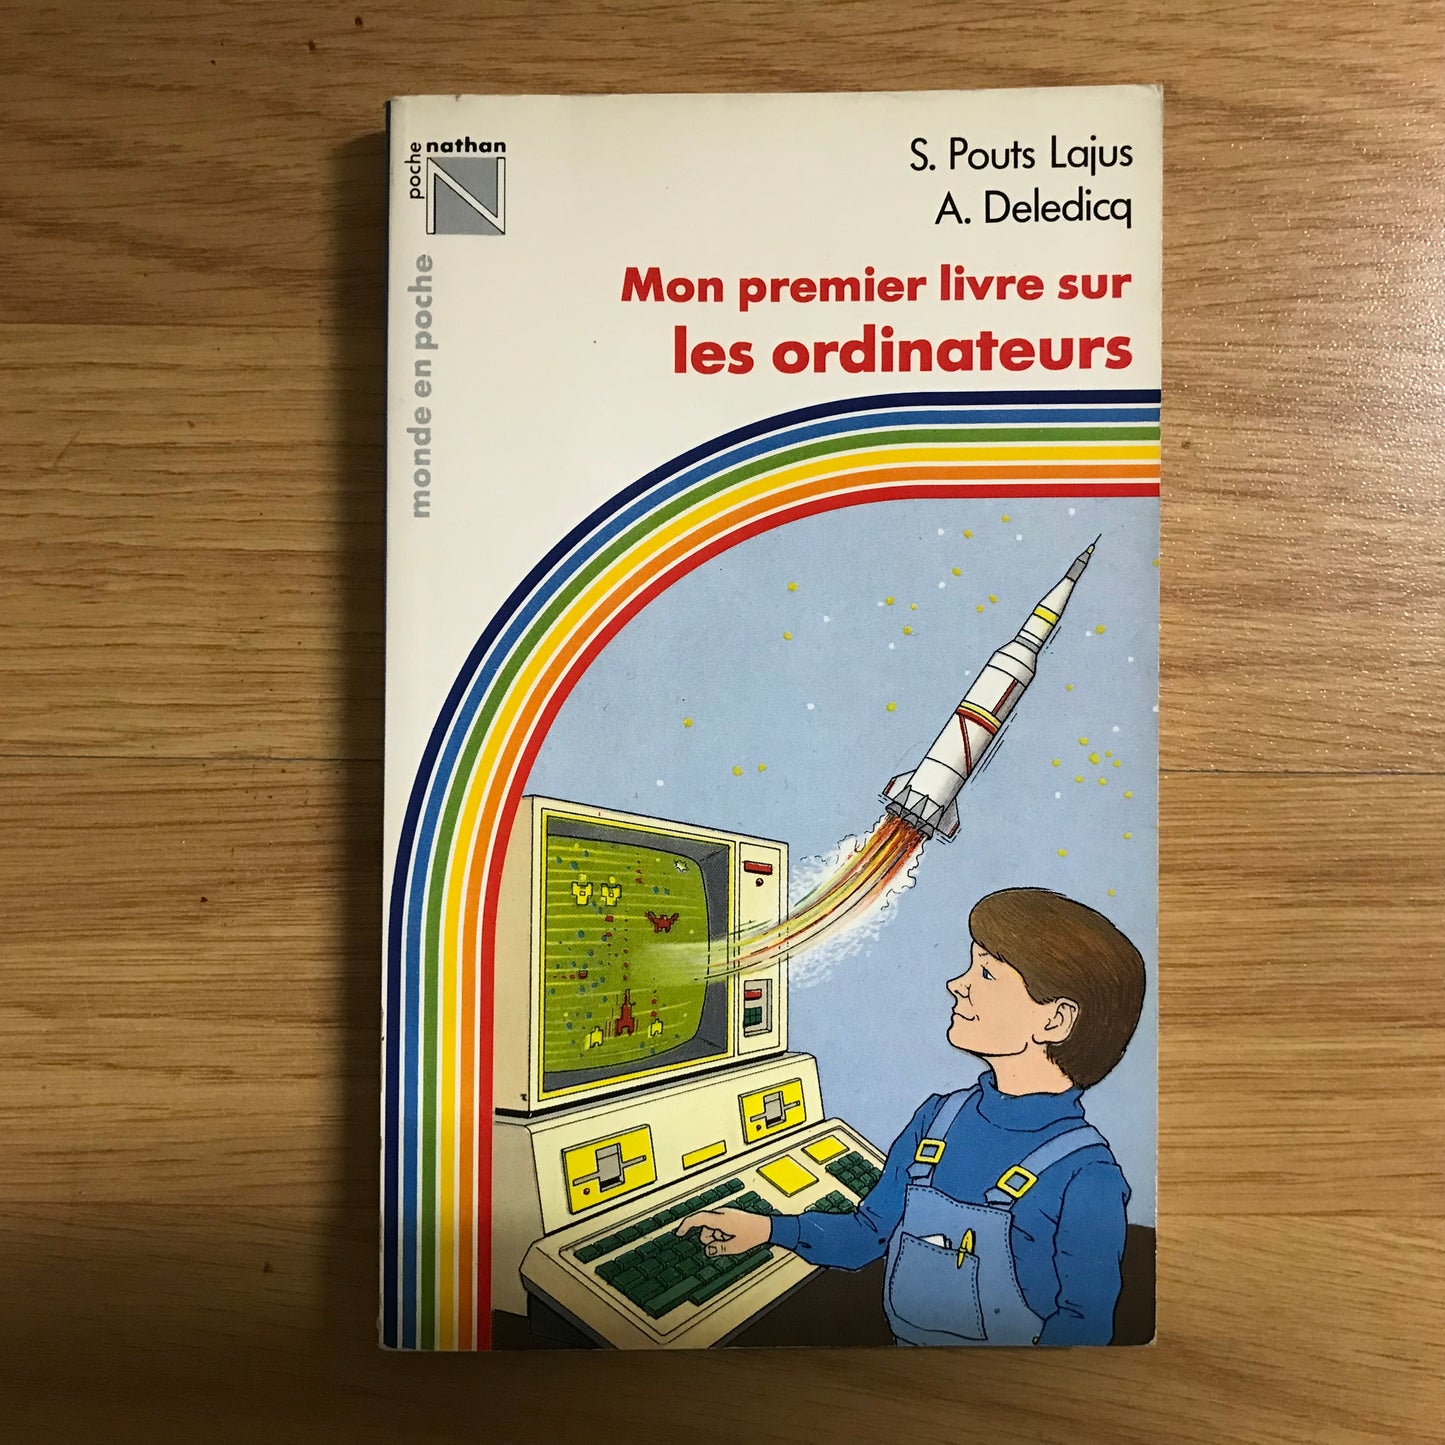 Pouts Lajus, S. - Mon premier livre sur les ordinateurs